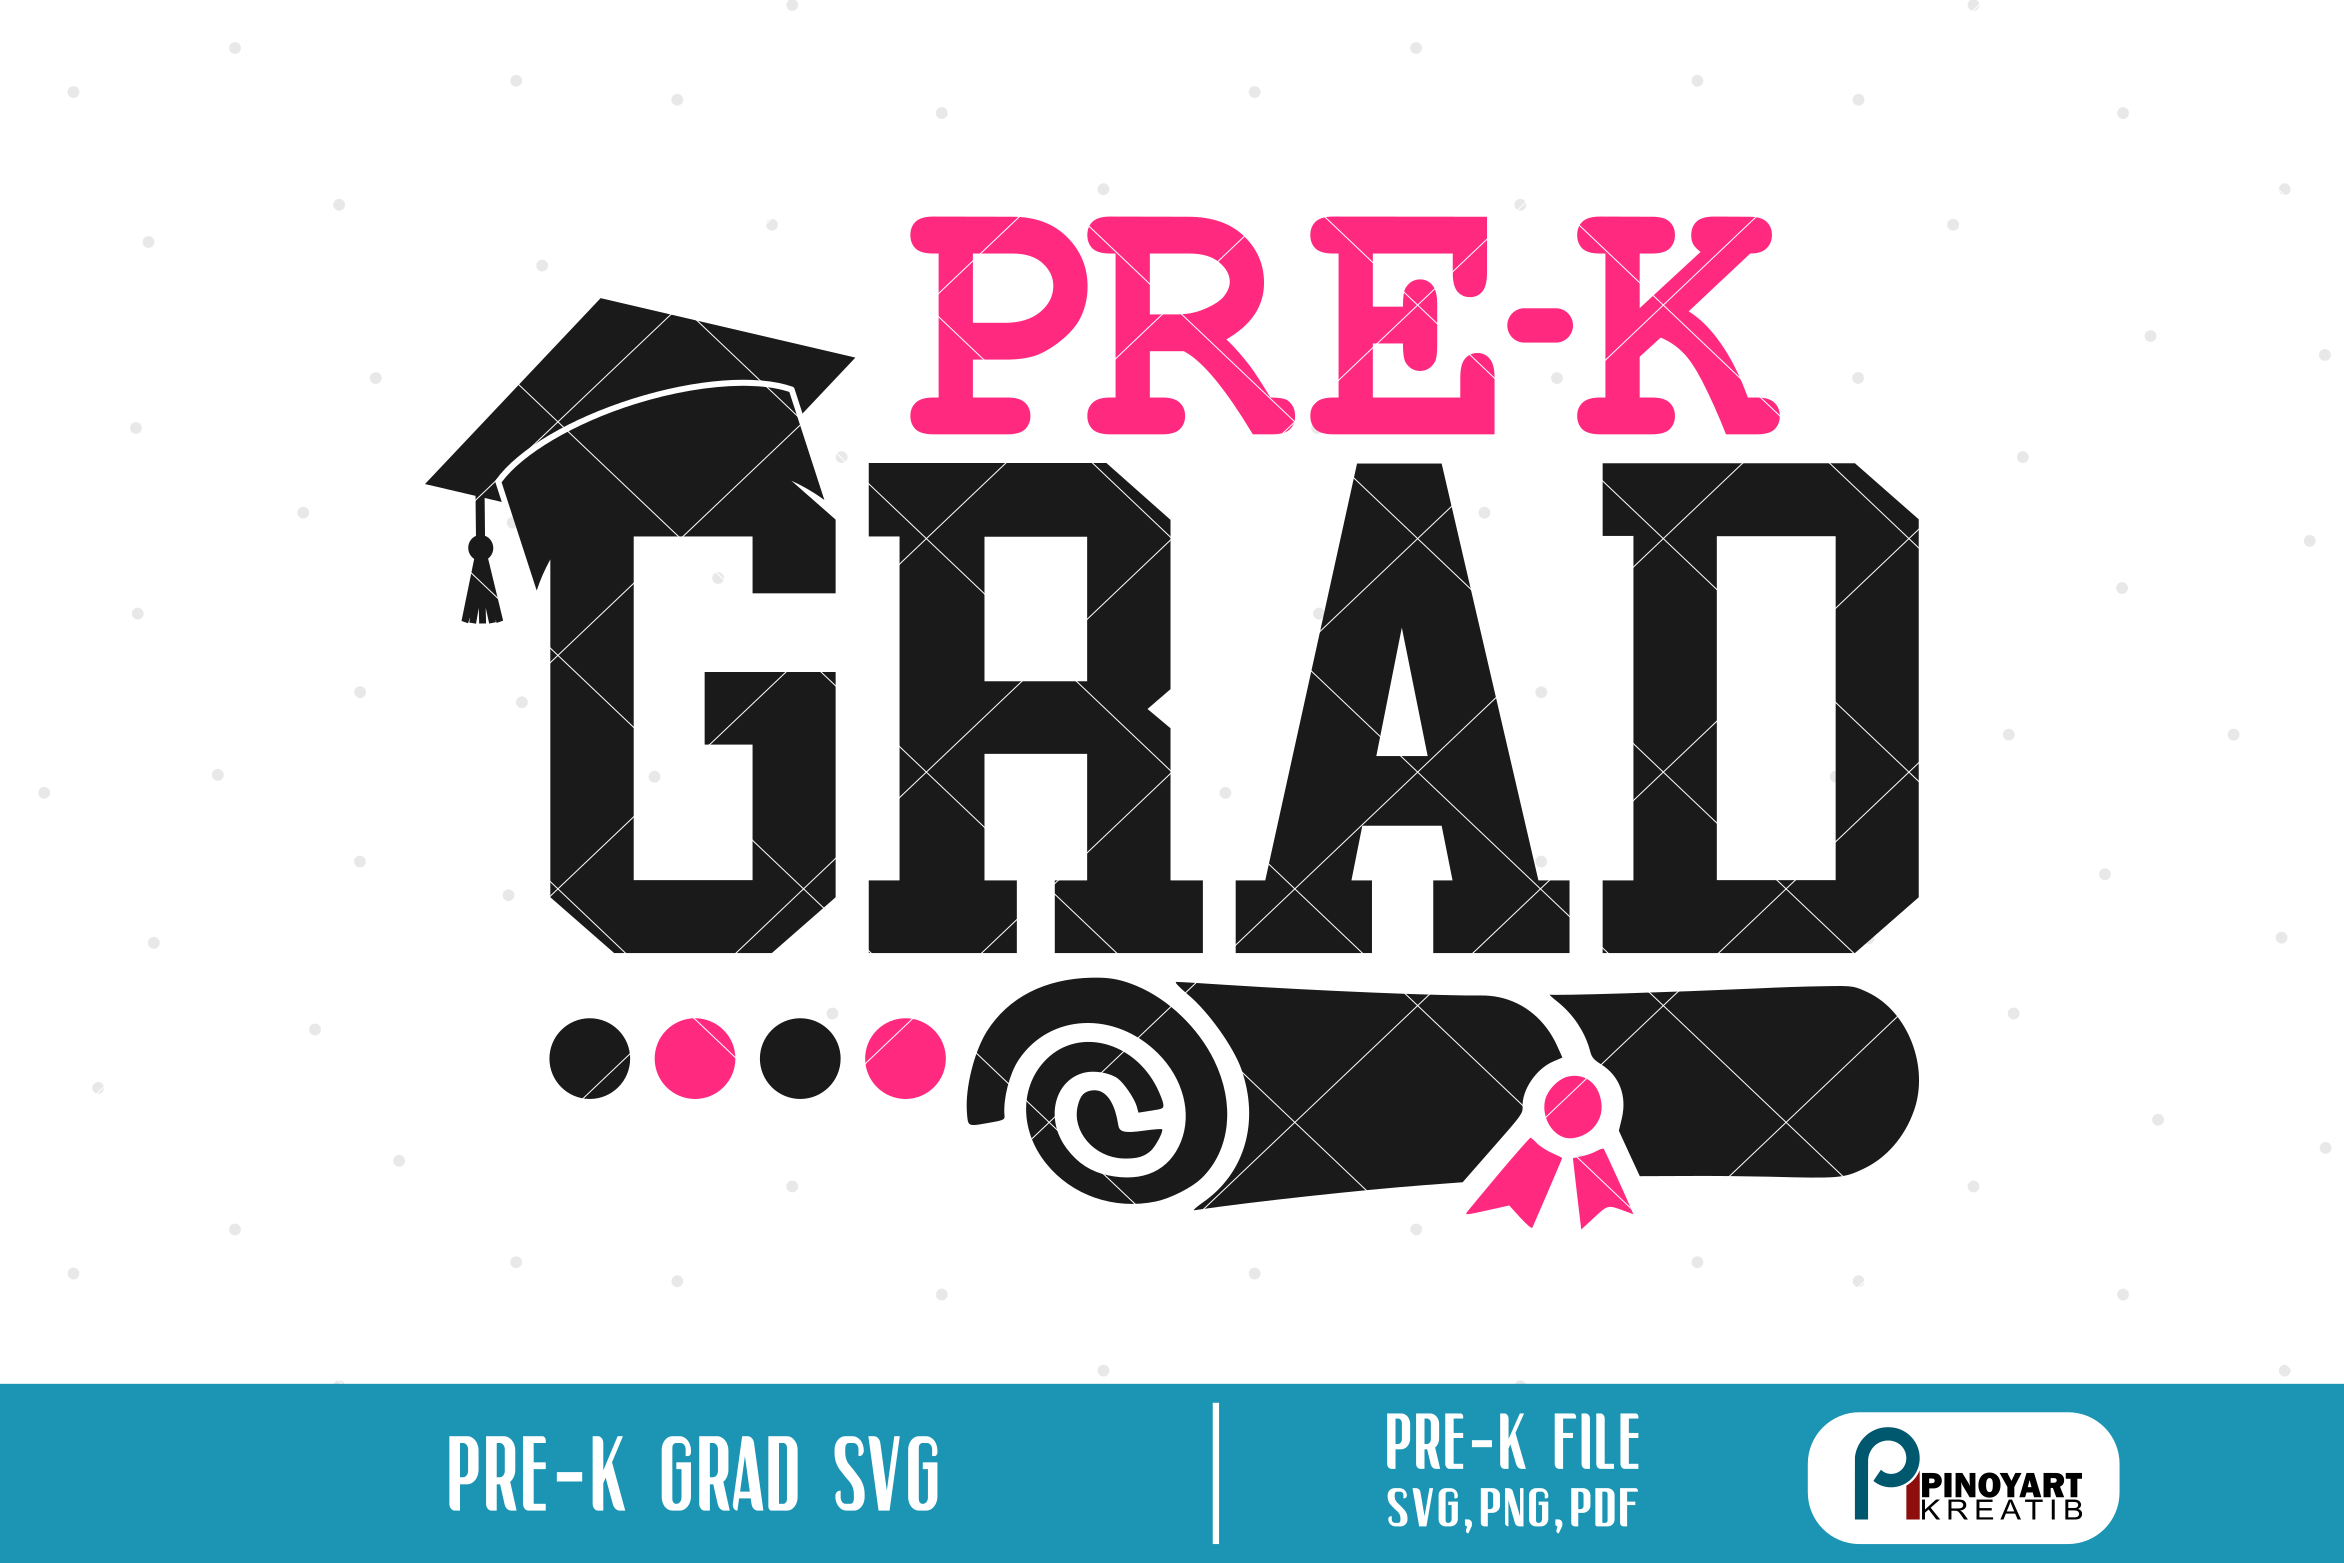 Download pre-k grad svg, pre-k graduation svg, kindergarten svg